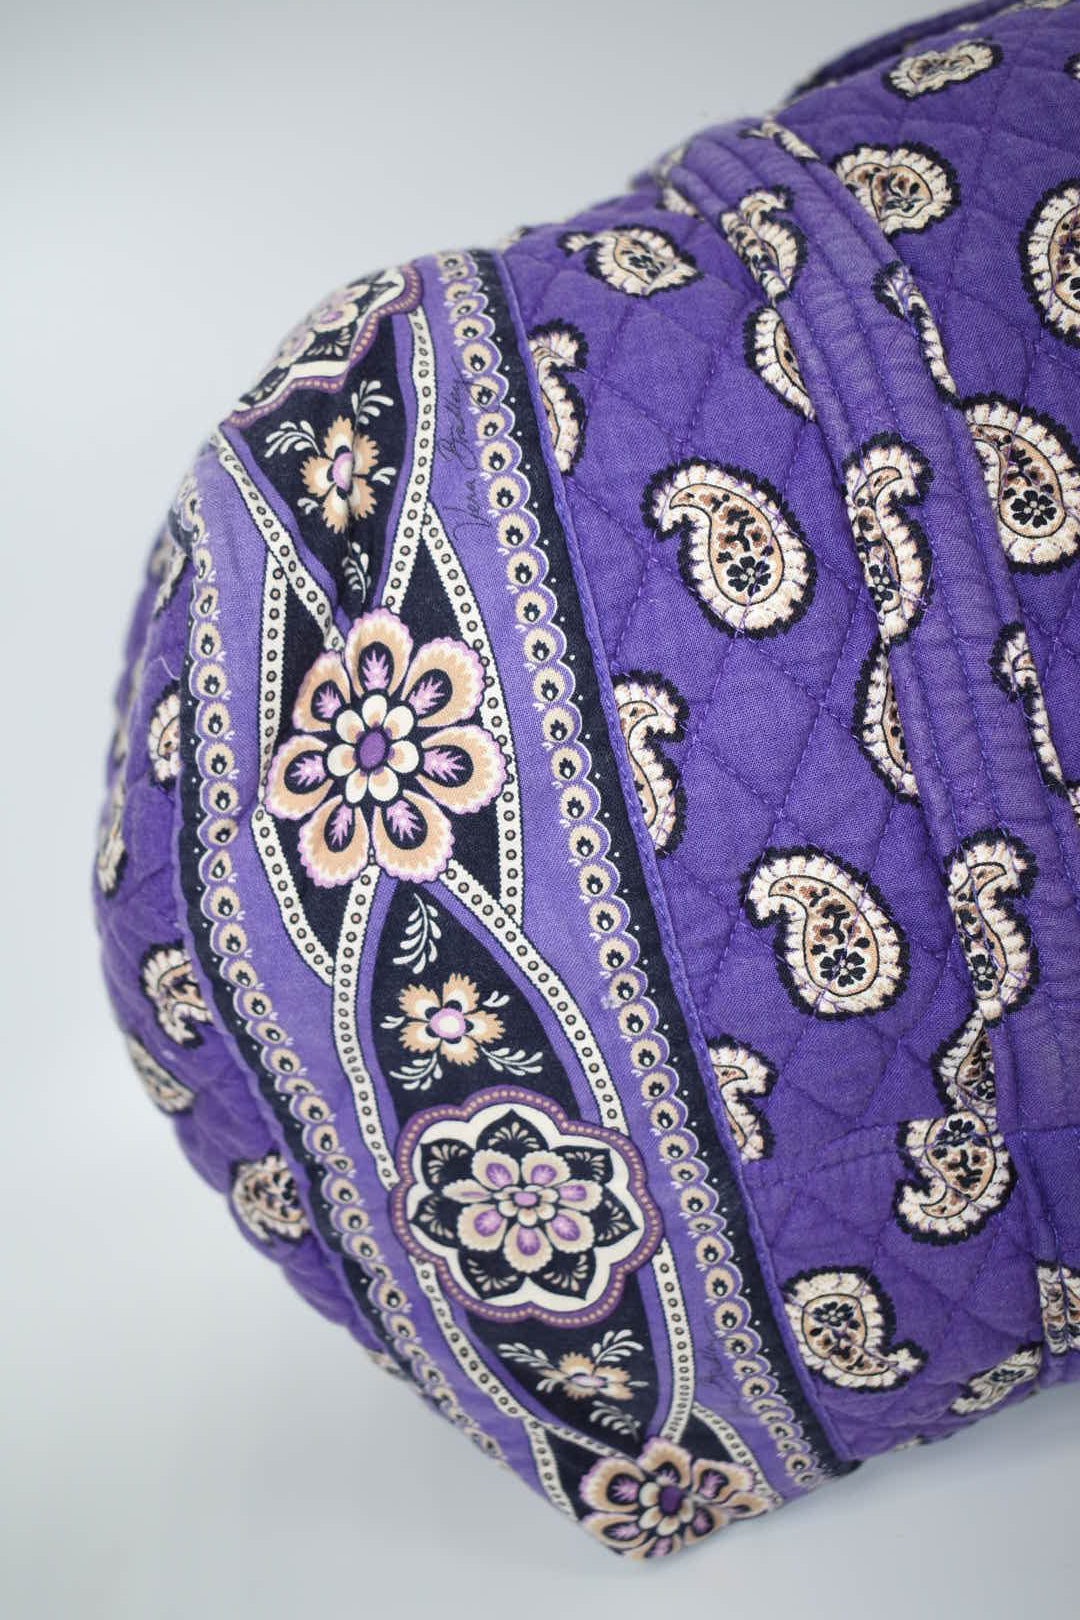 Vera Bradley Large Duffel Bag in "Simply Violet" Pattern